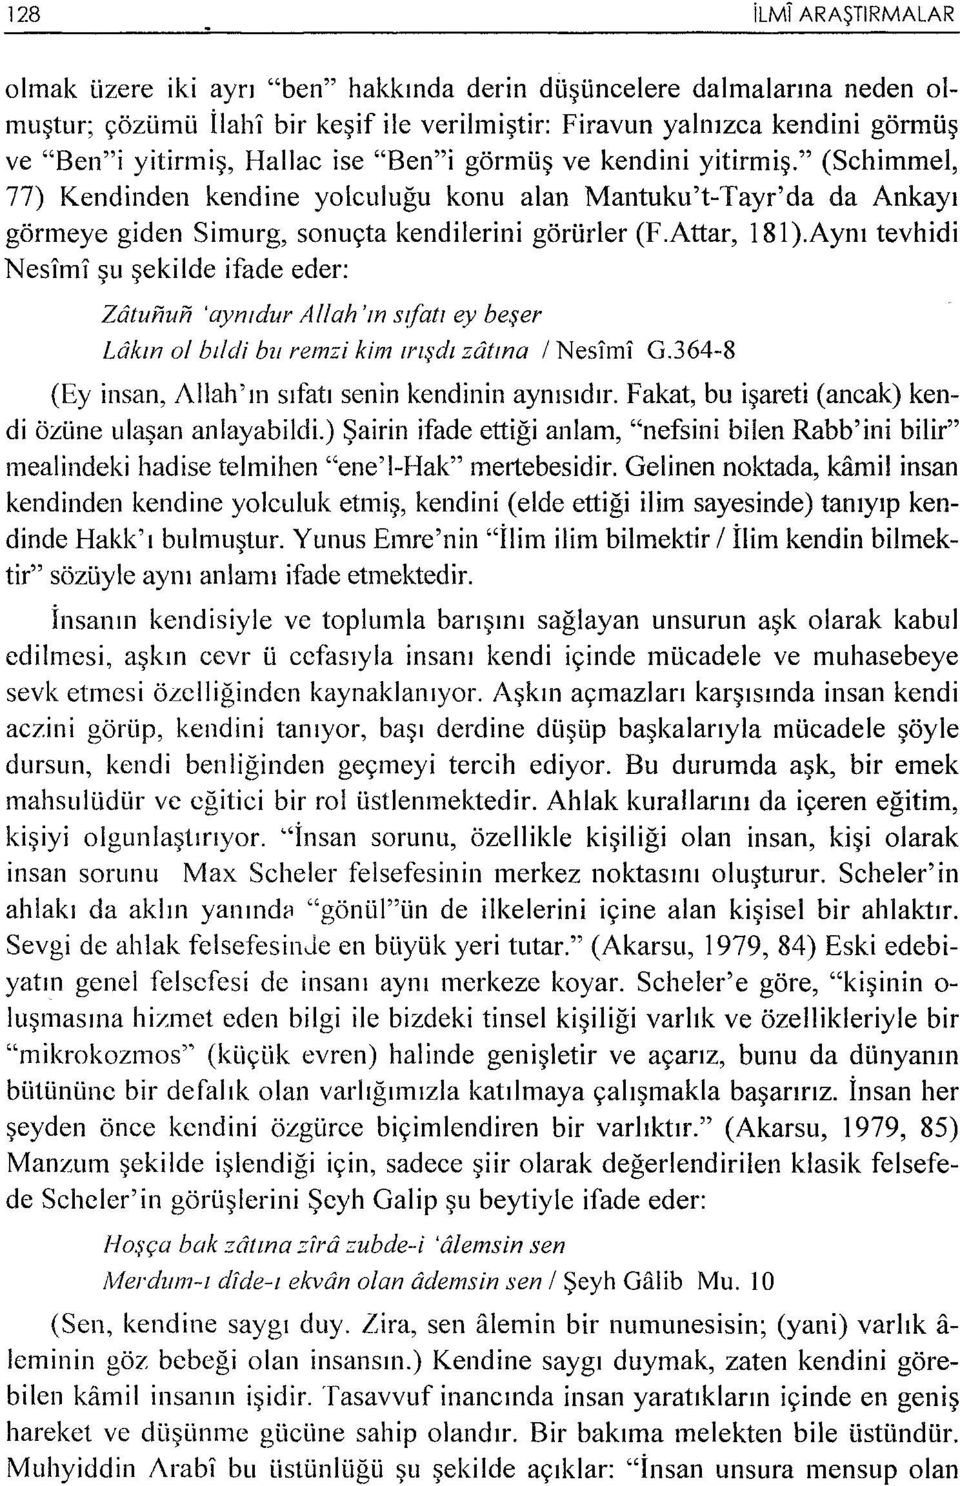 " (Schimmel, 77) Kendinden kendine yolculugu konu alan Mantuku't-Tayr'da da Ankayt gormeye giden Simurg, sonu<;ta kendilerini gori.irler (F.Attar, 181).